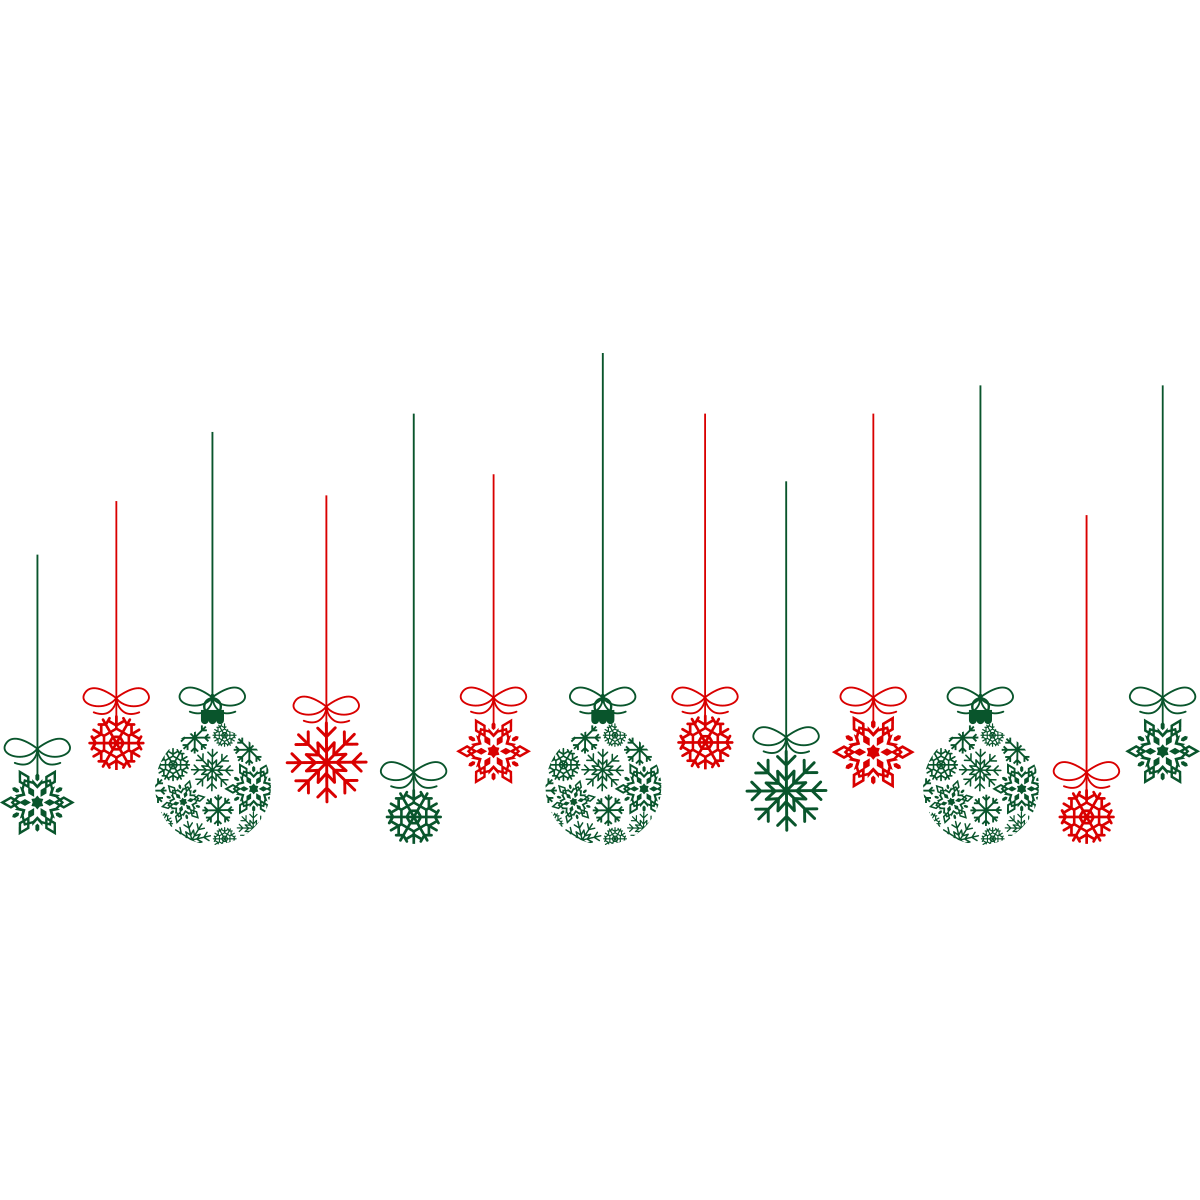 Etiquettes autocollantes de Noël - Boule verte